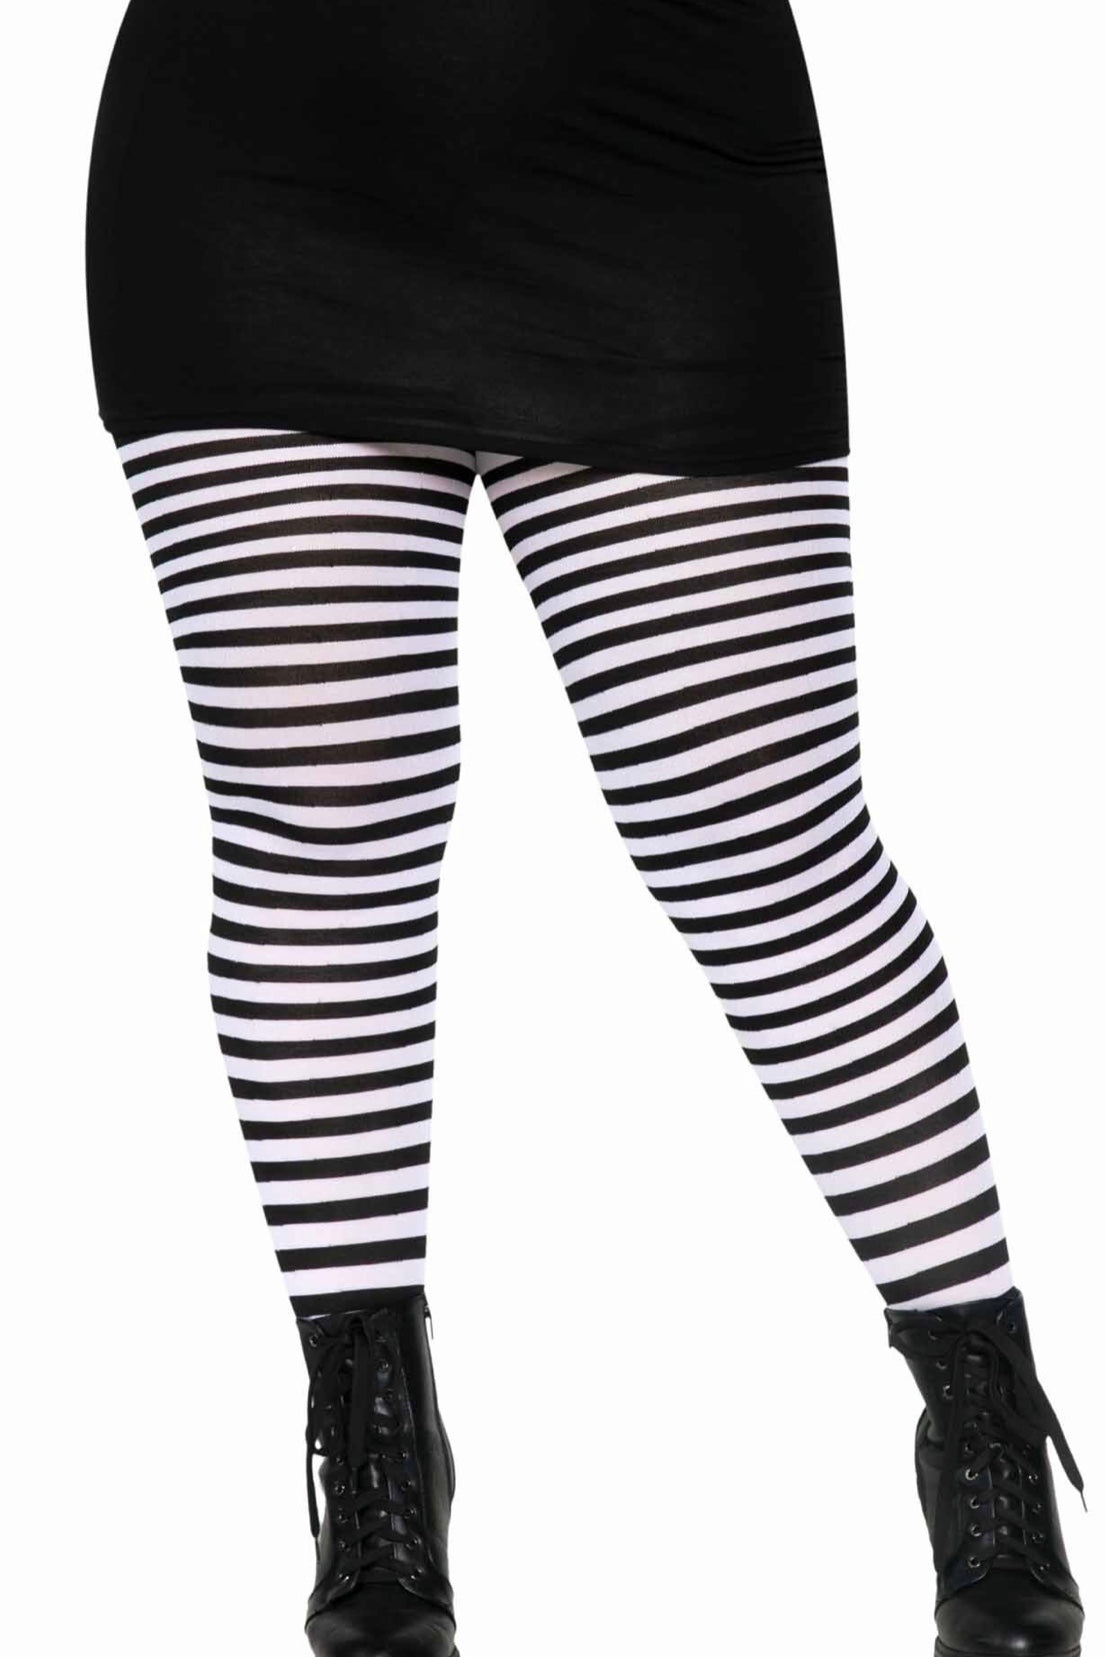 Striped tights - CurvynBeautiful 